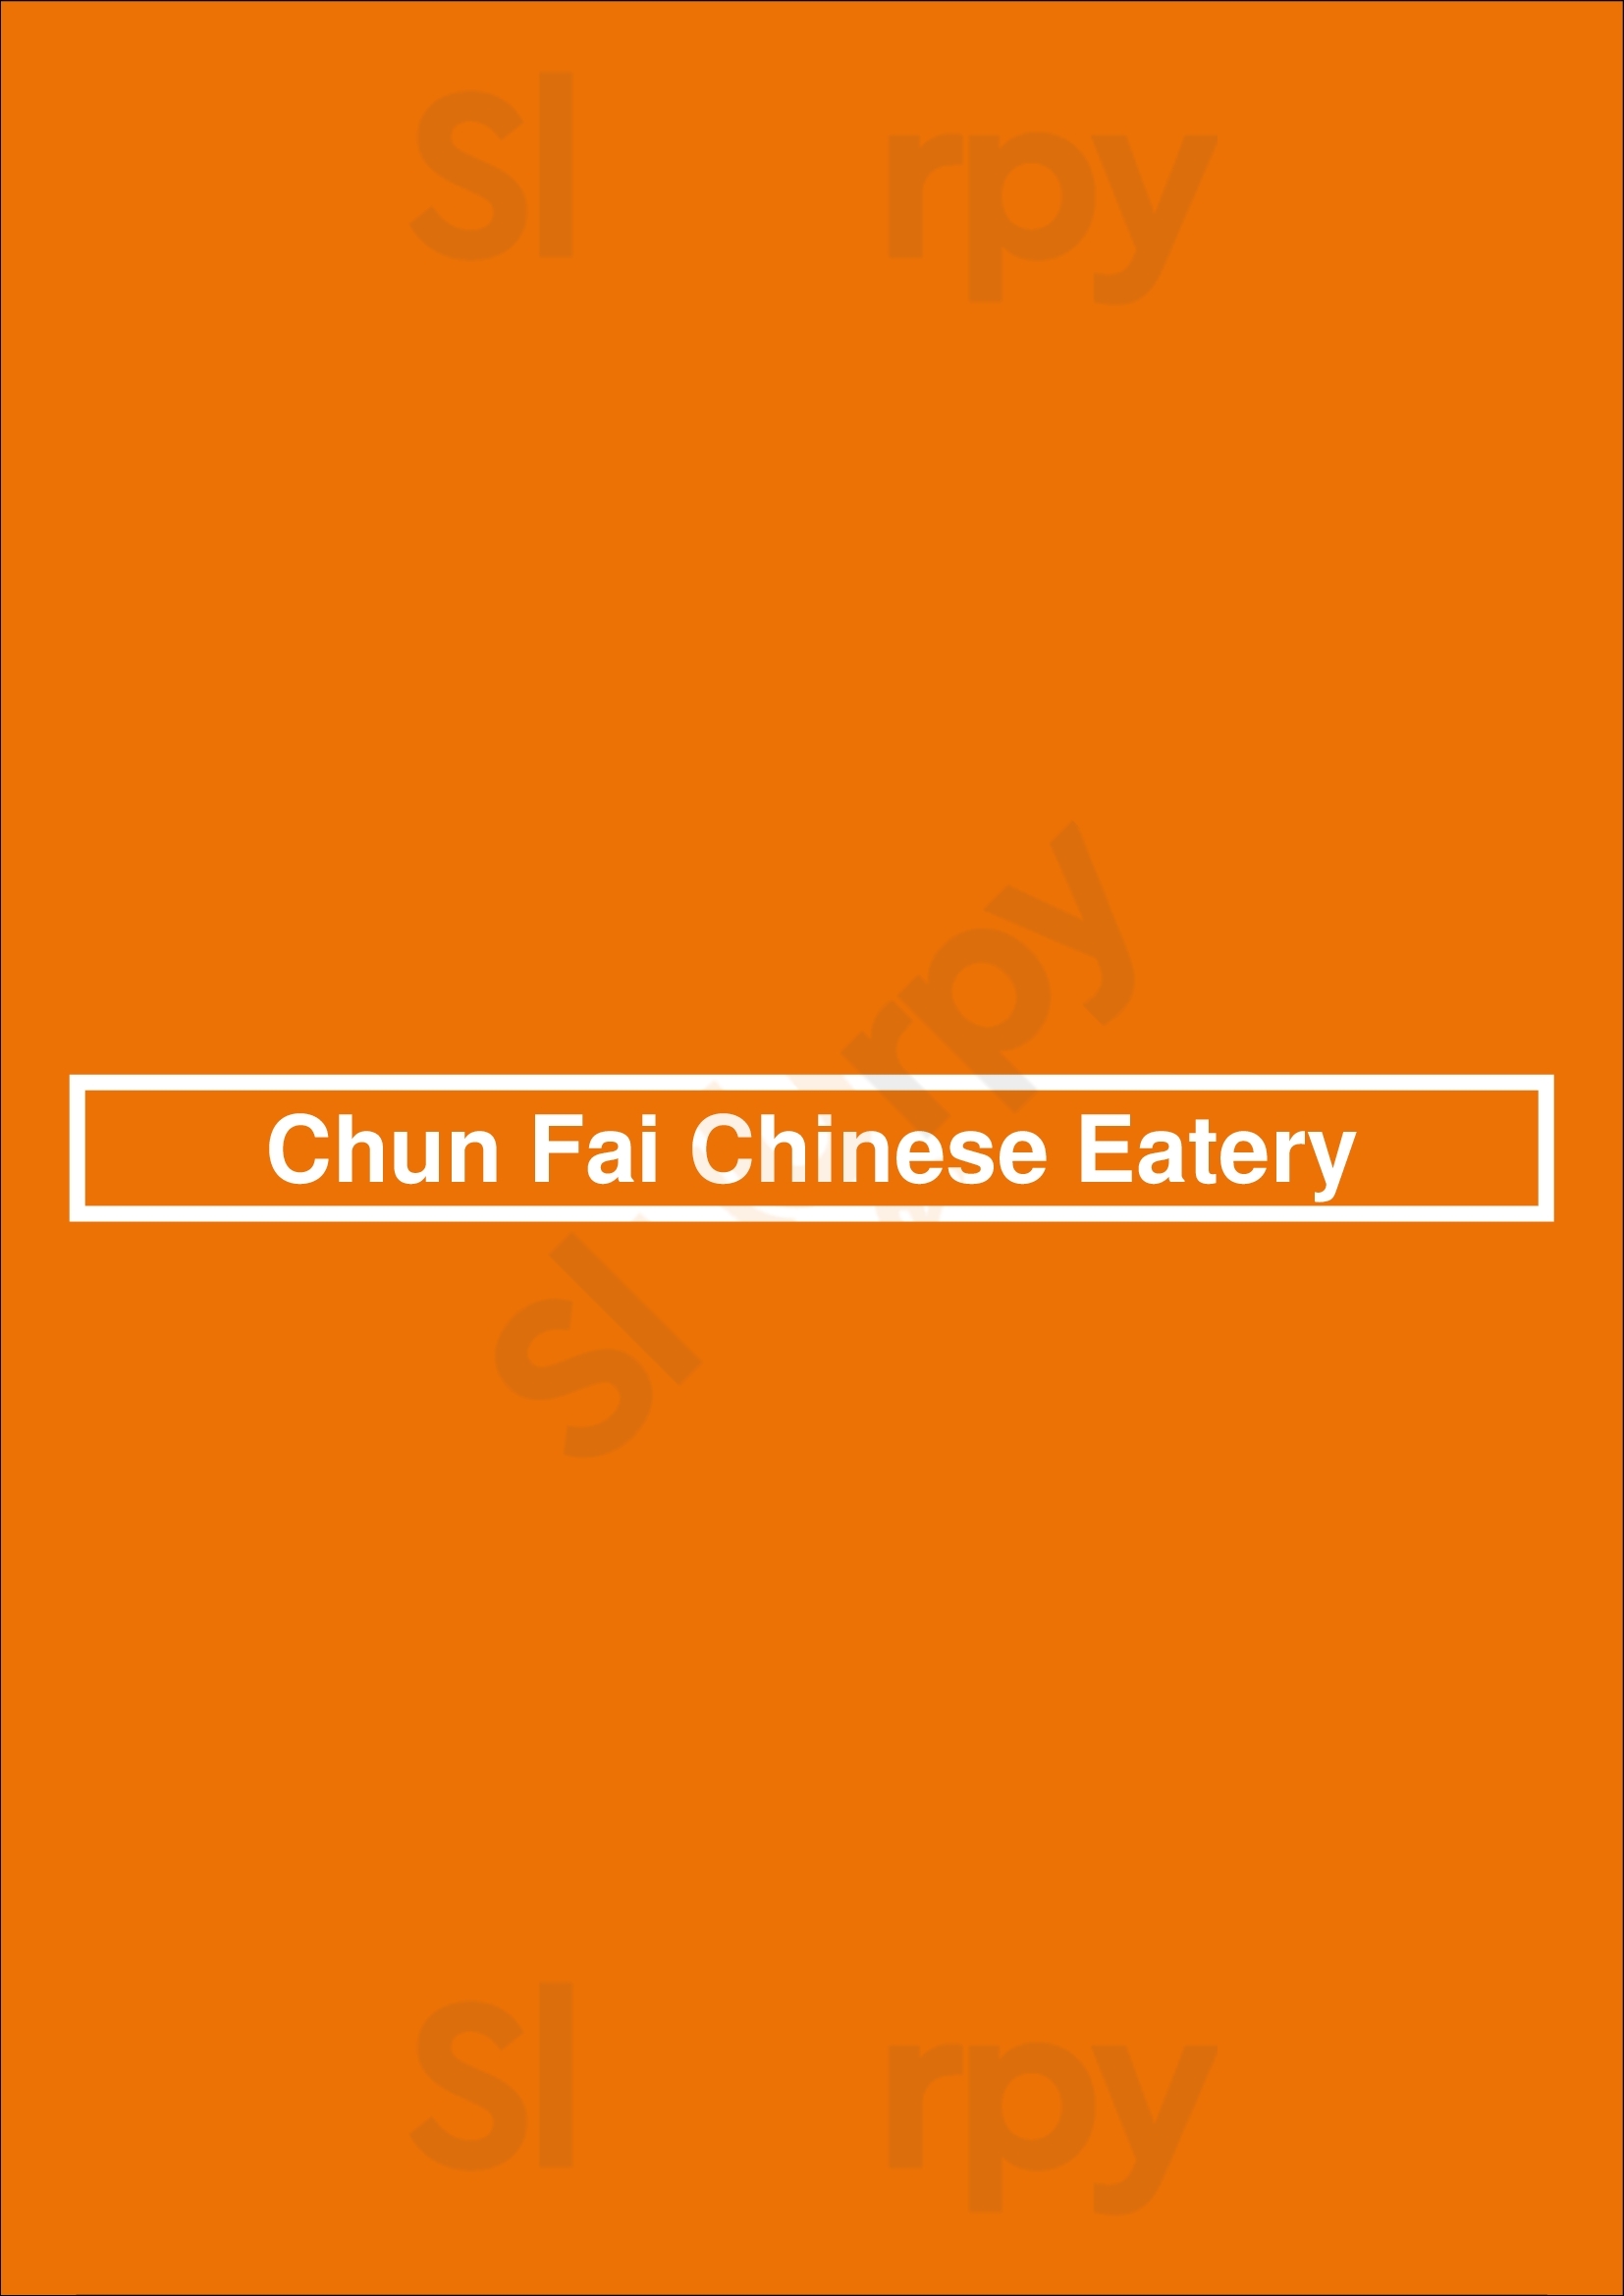 Chun Fai Chinese Eatery Las Vegas Menu - 1